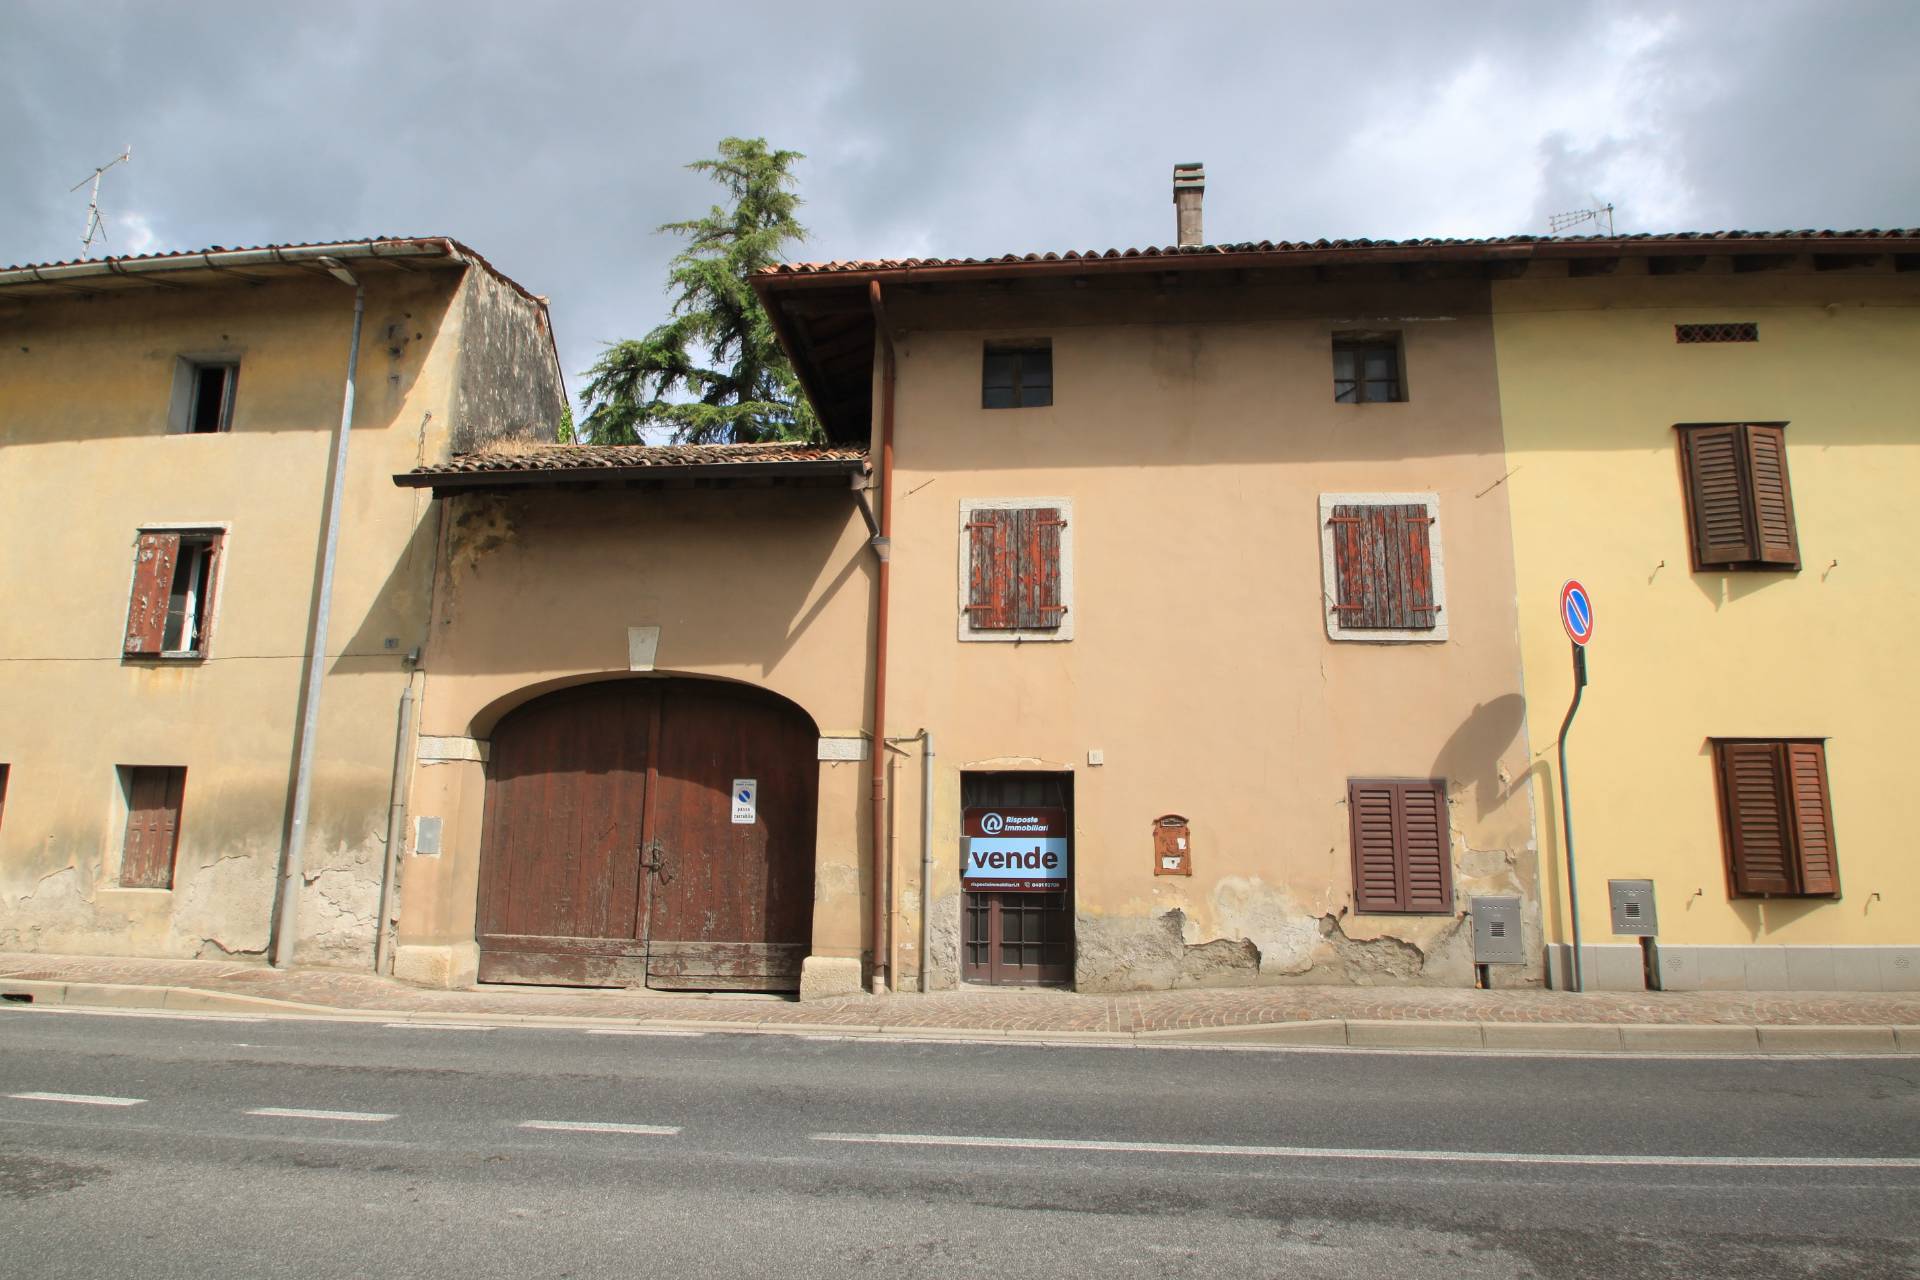 Rustico da ristrutturare, Romans d'Isonzo versa